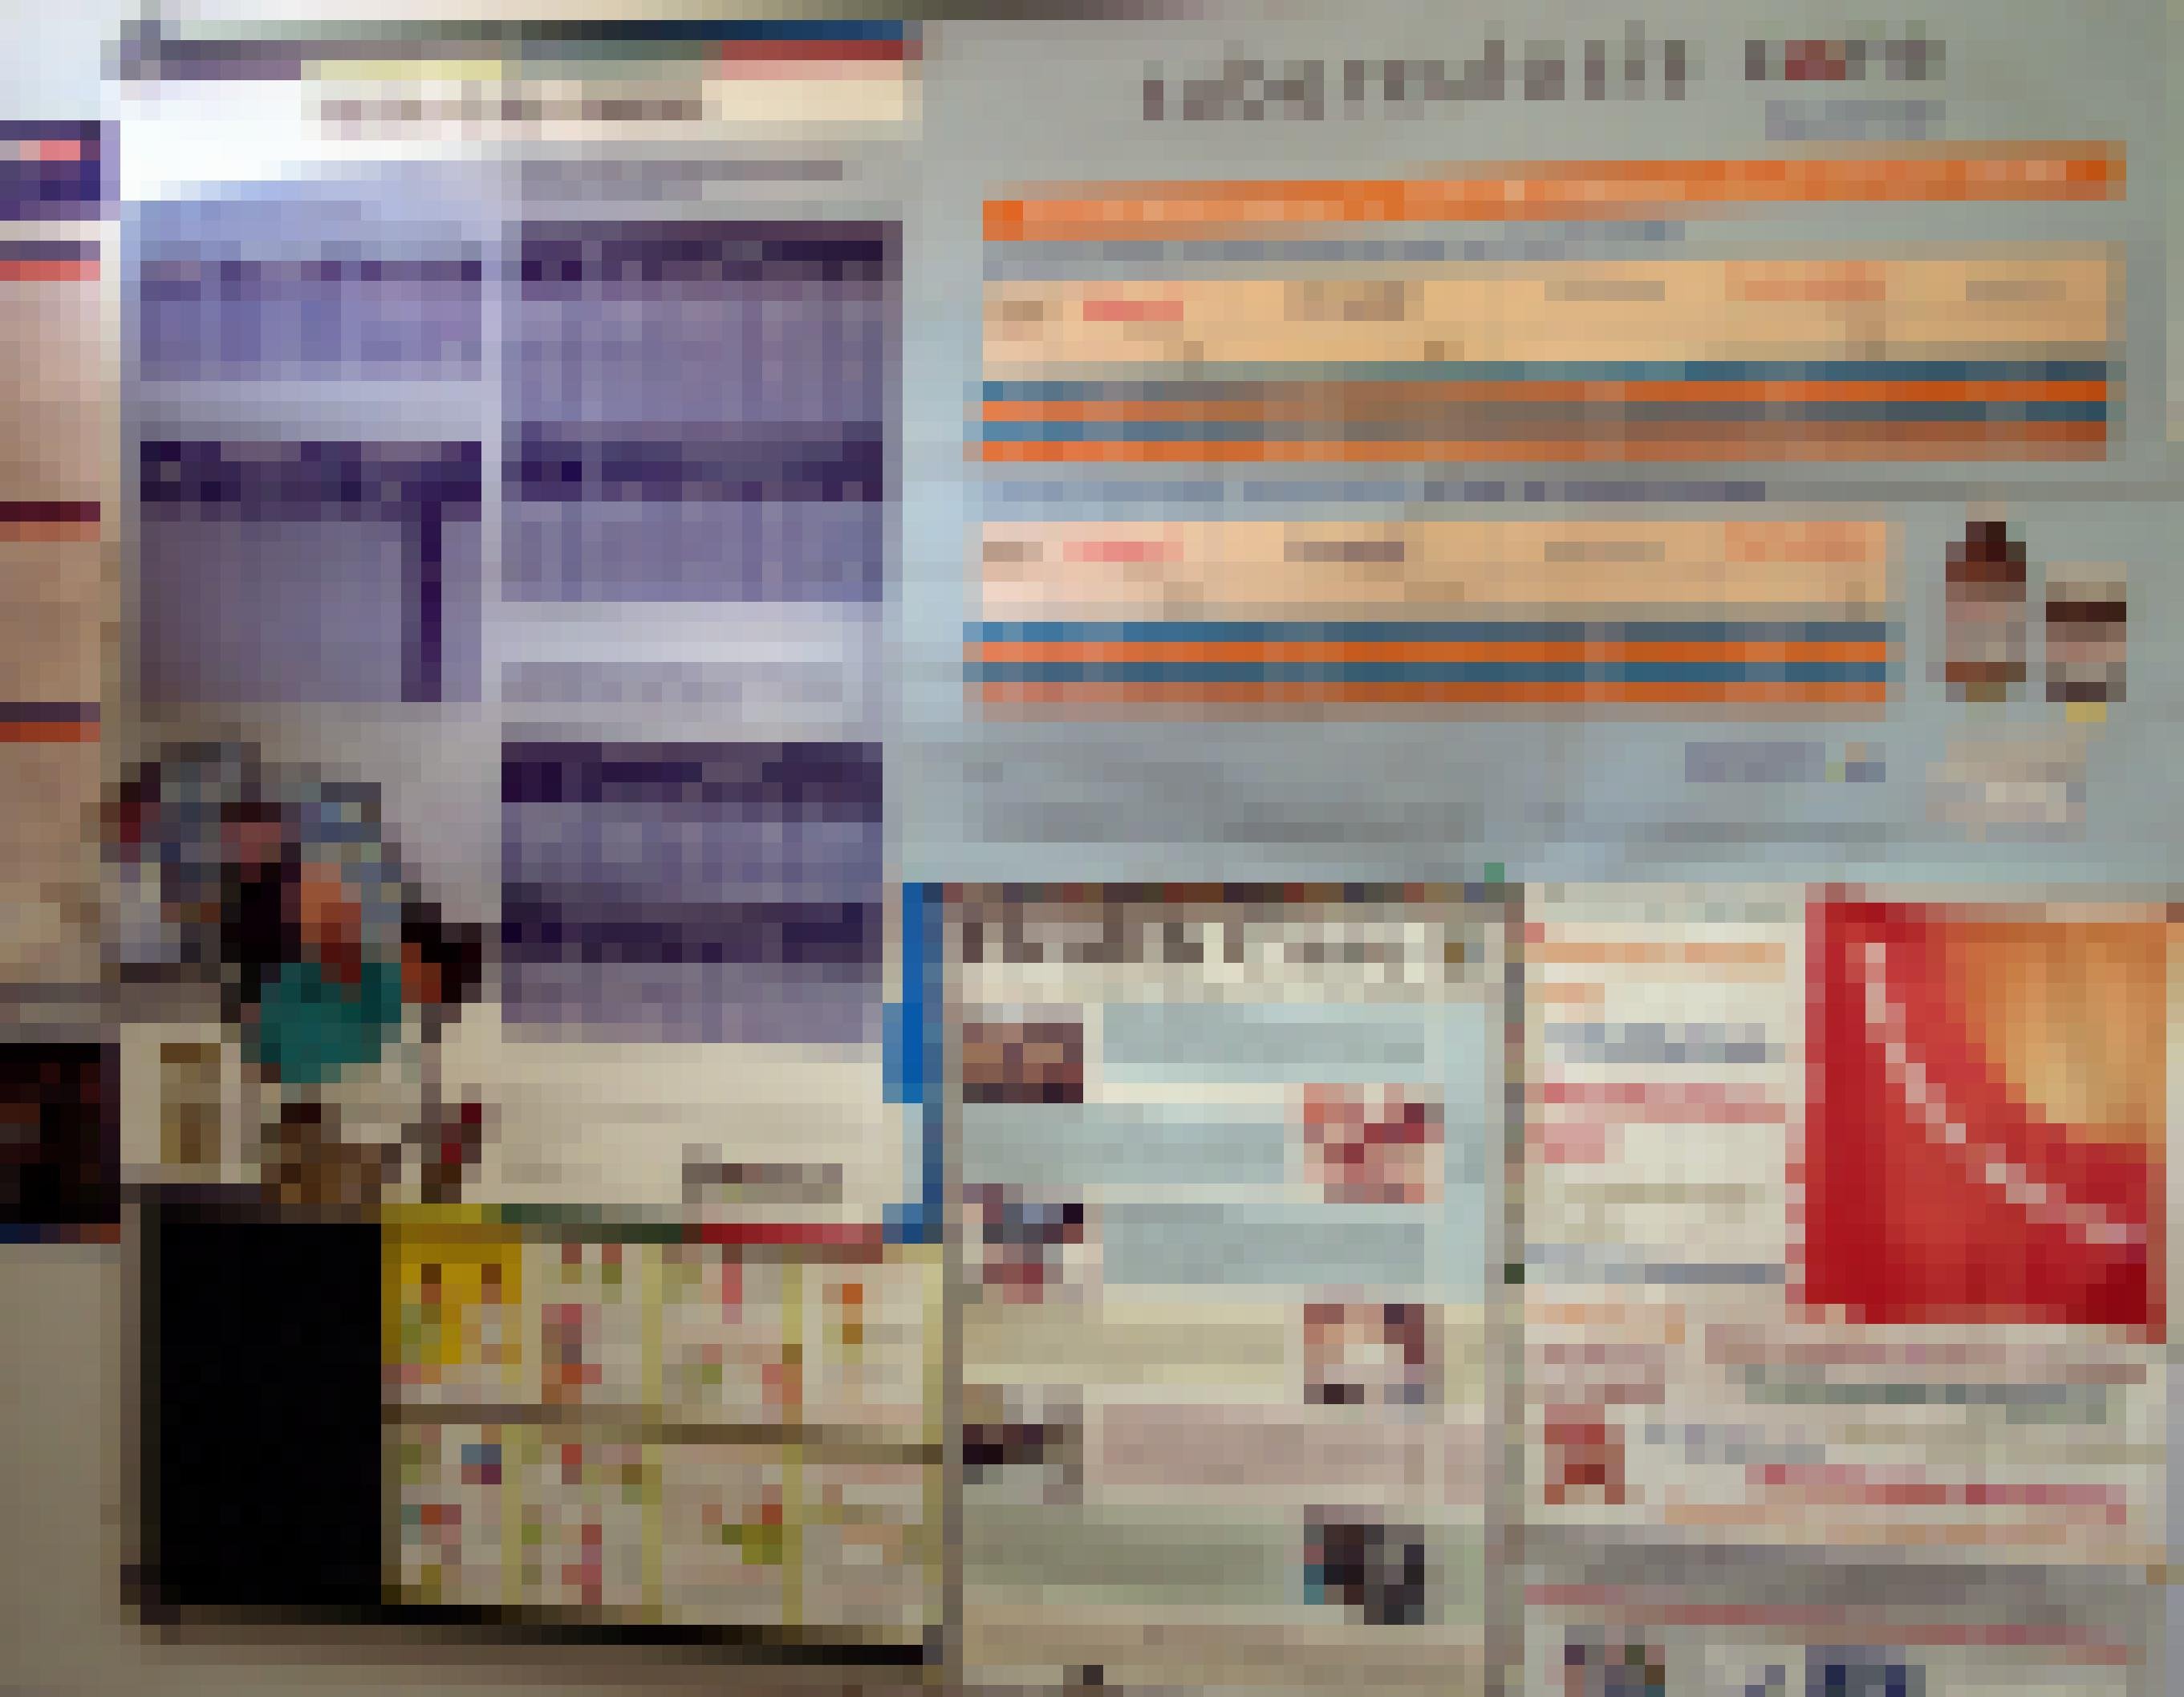 An den Wänden hängen englischsprachige Aufklärungsplakate über Tuberkulose und Informationen über Medikamente